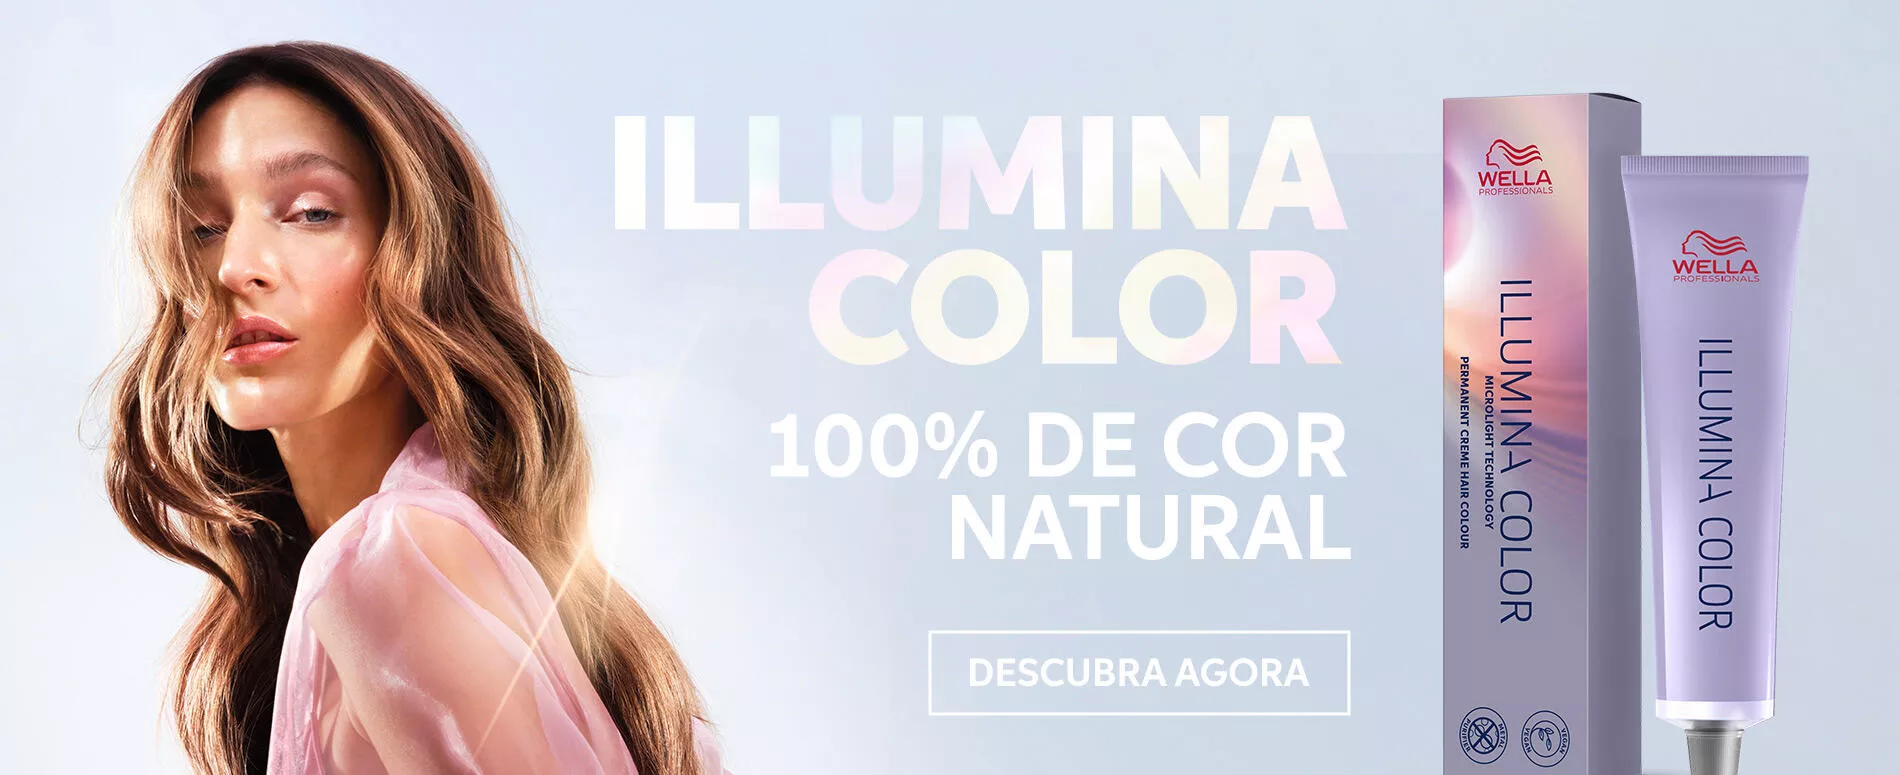 Uma modelo com cabelo castanho claro ondulado ao lado de imagens do produto para o cabelo 100% natural Illumina Color da Wella Professionals